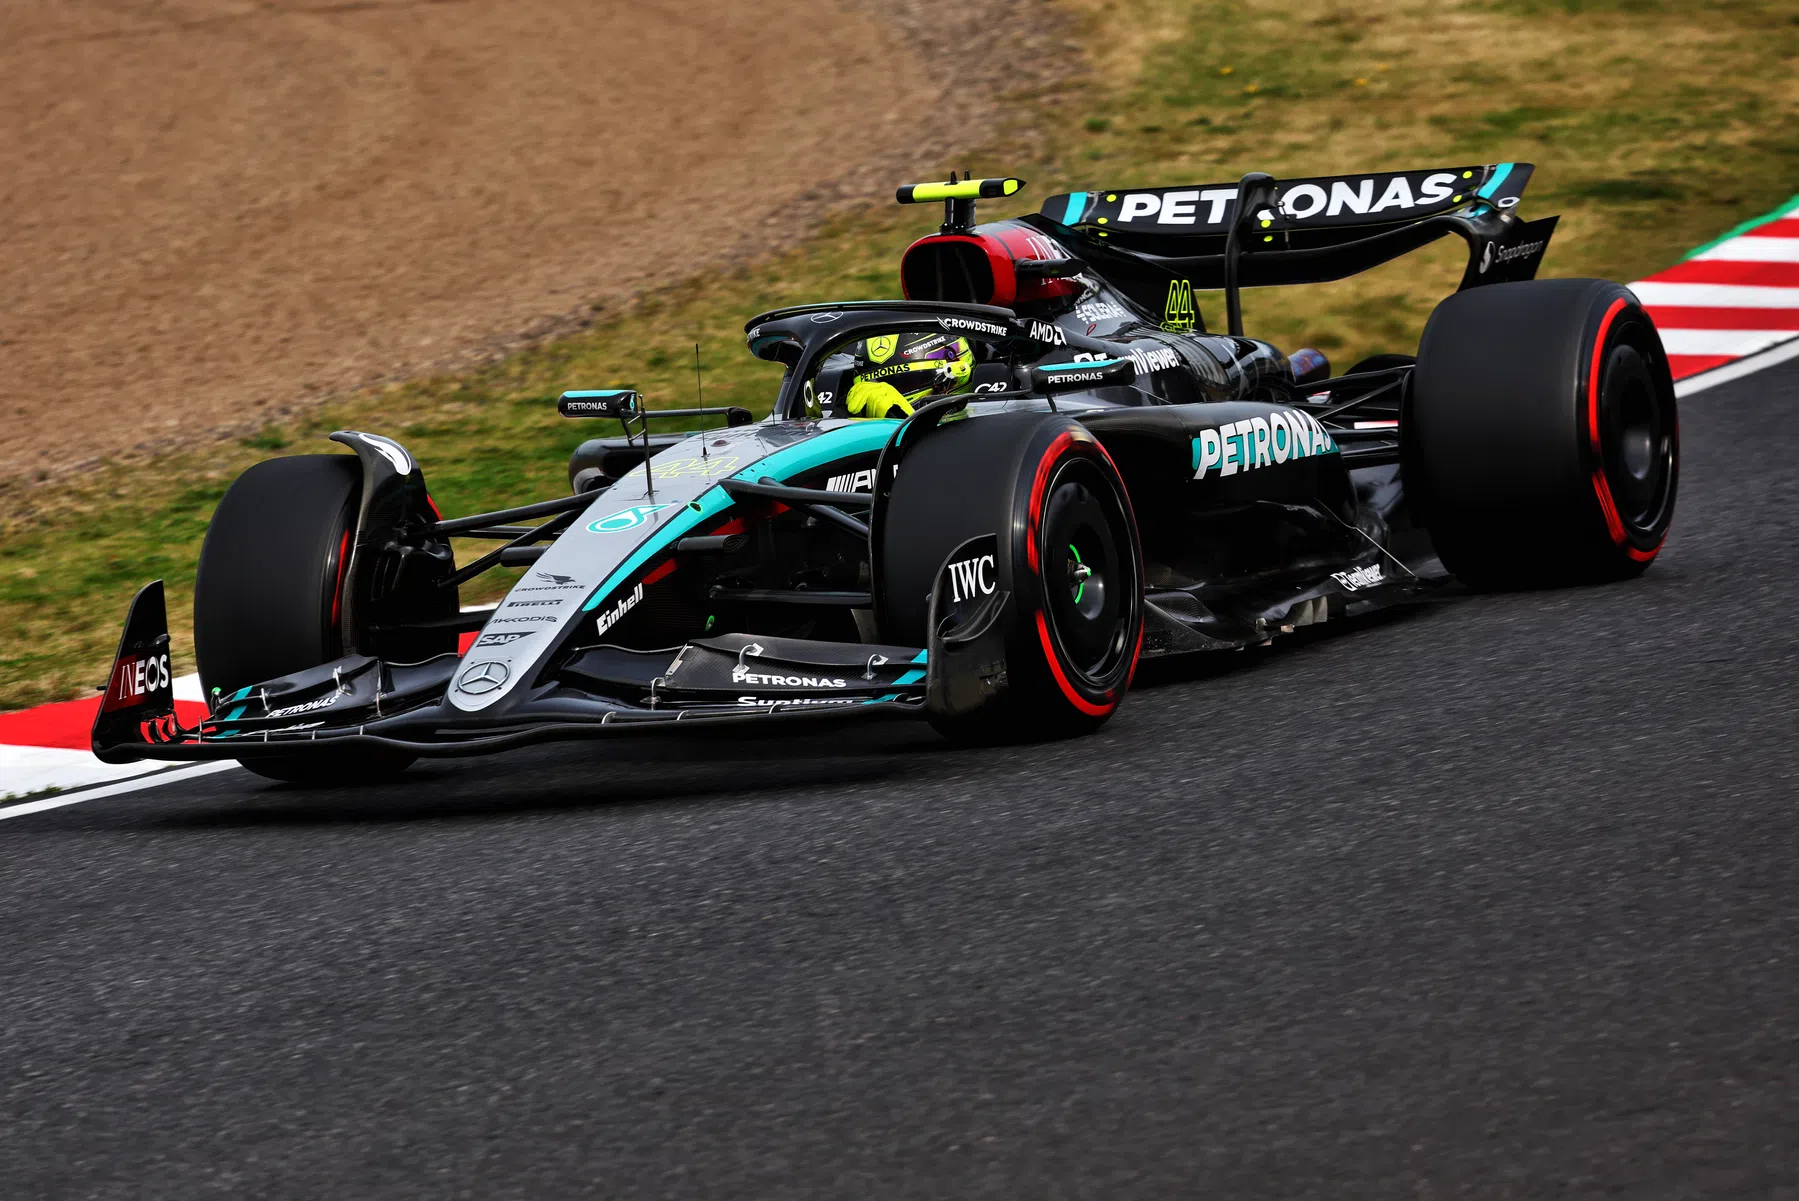 Mercedes construye un coche de lego: ¿podrá Lewis Hamilton ganar con él?